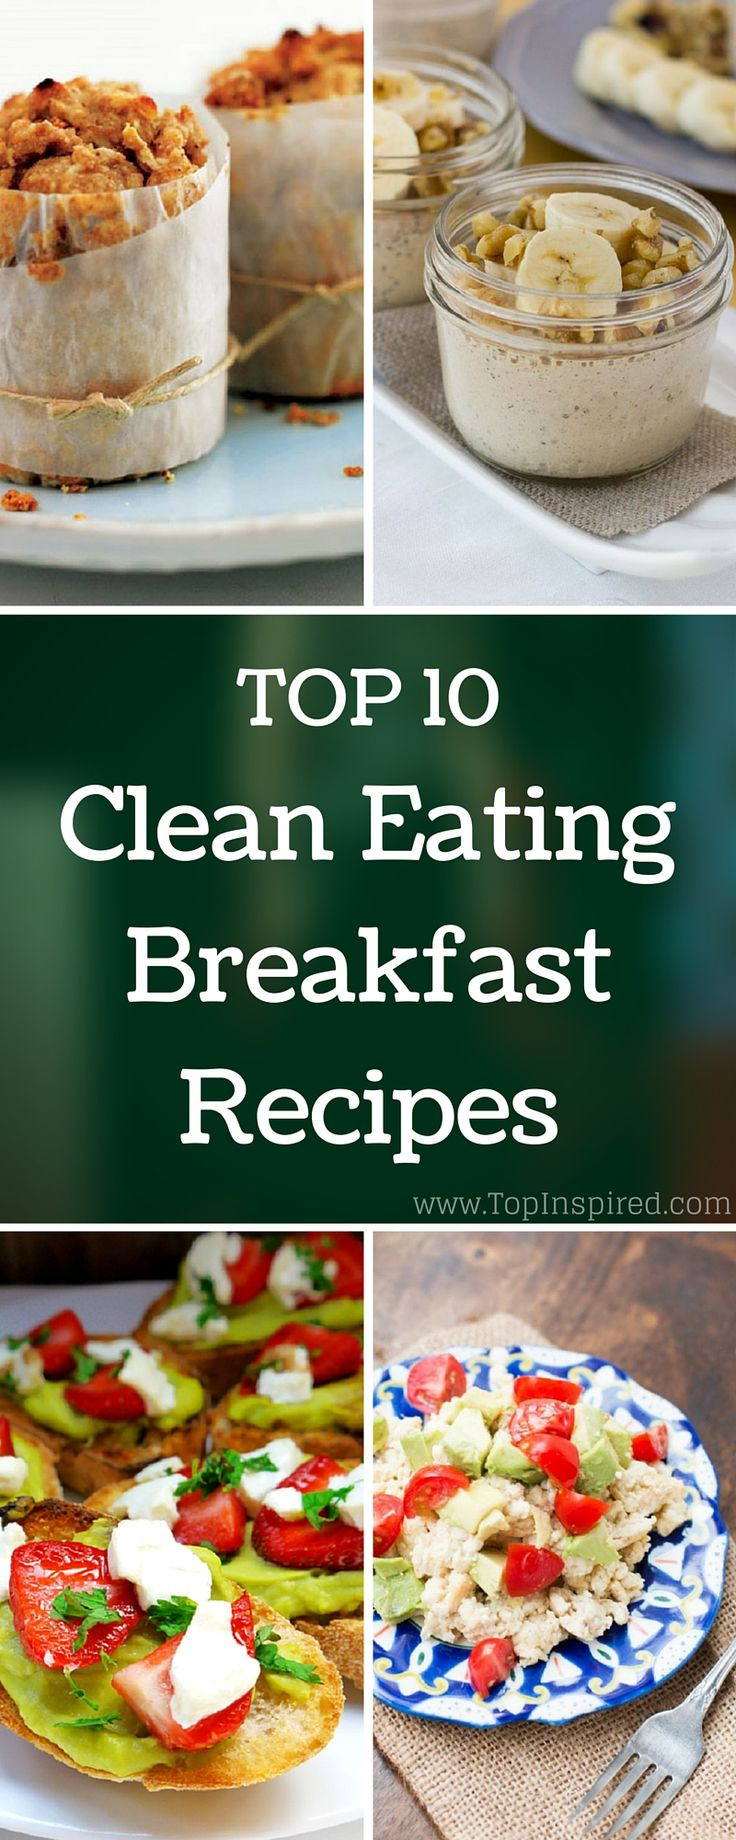 Clean Eating Breakfast
 Top 10 Clean Eating Breakfast Recipes